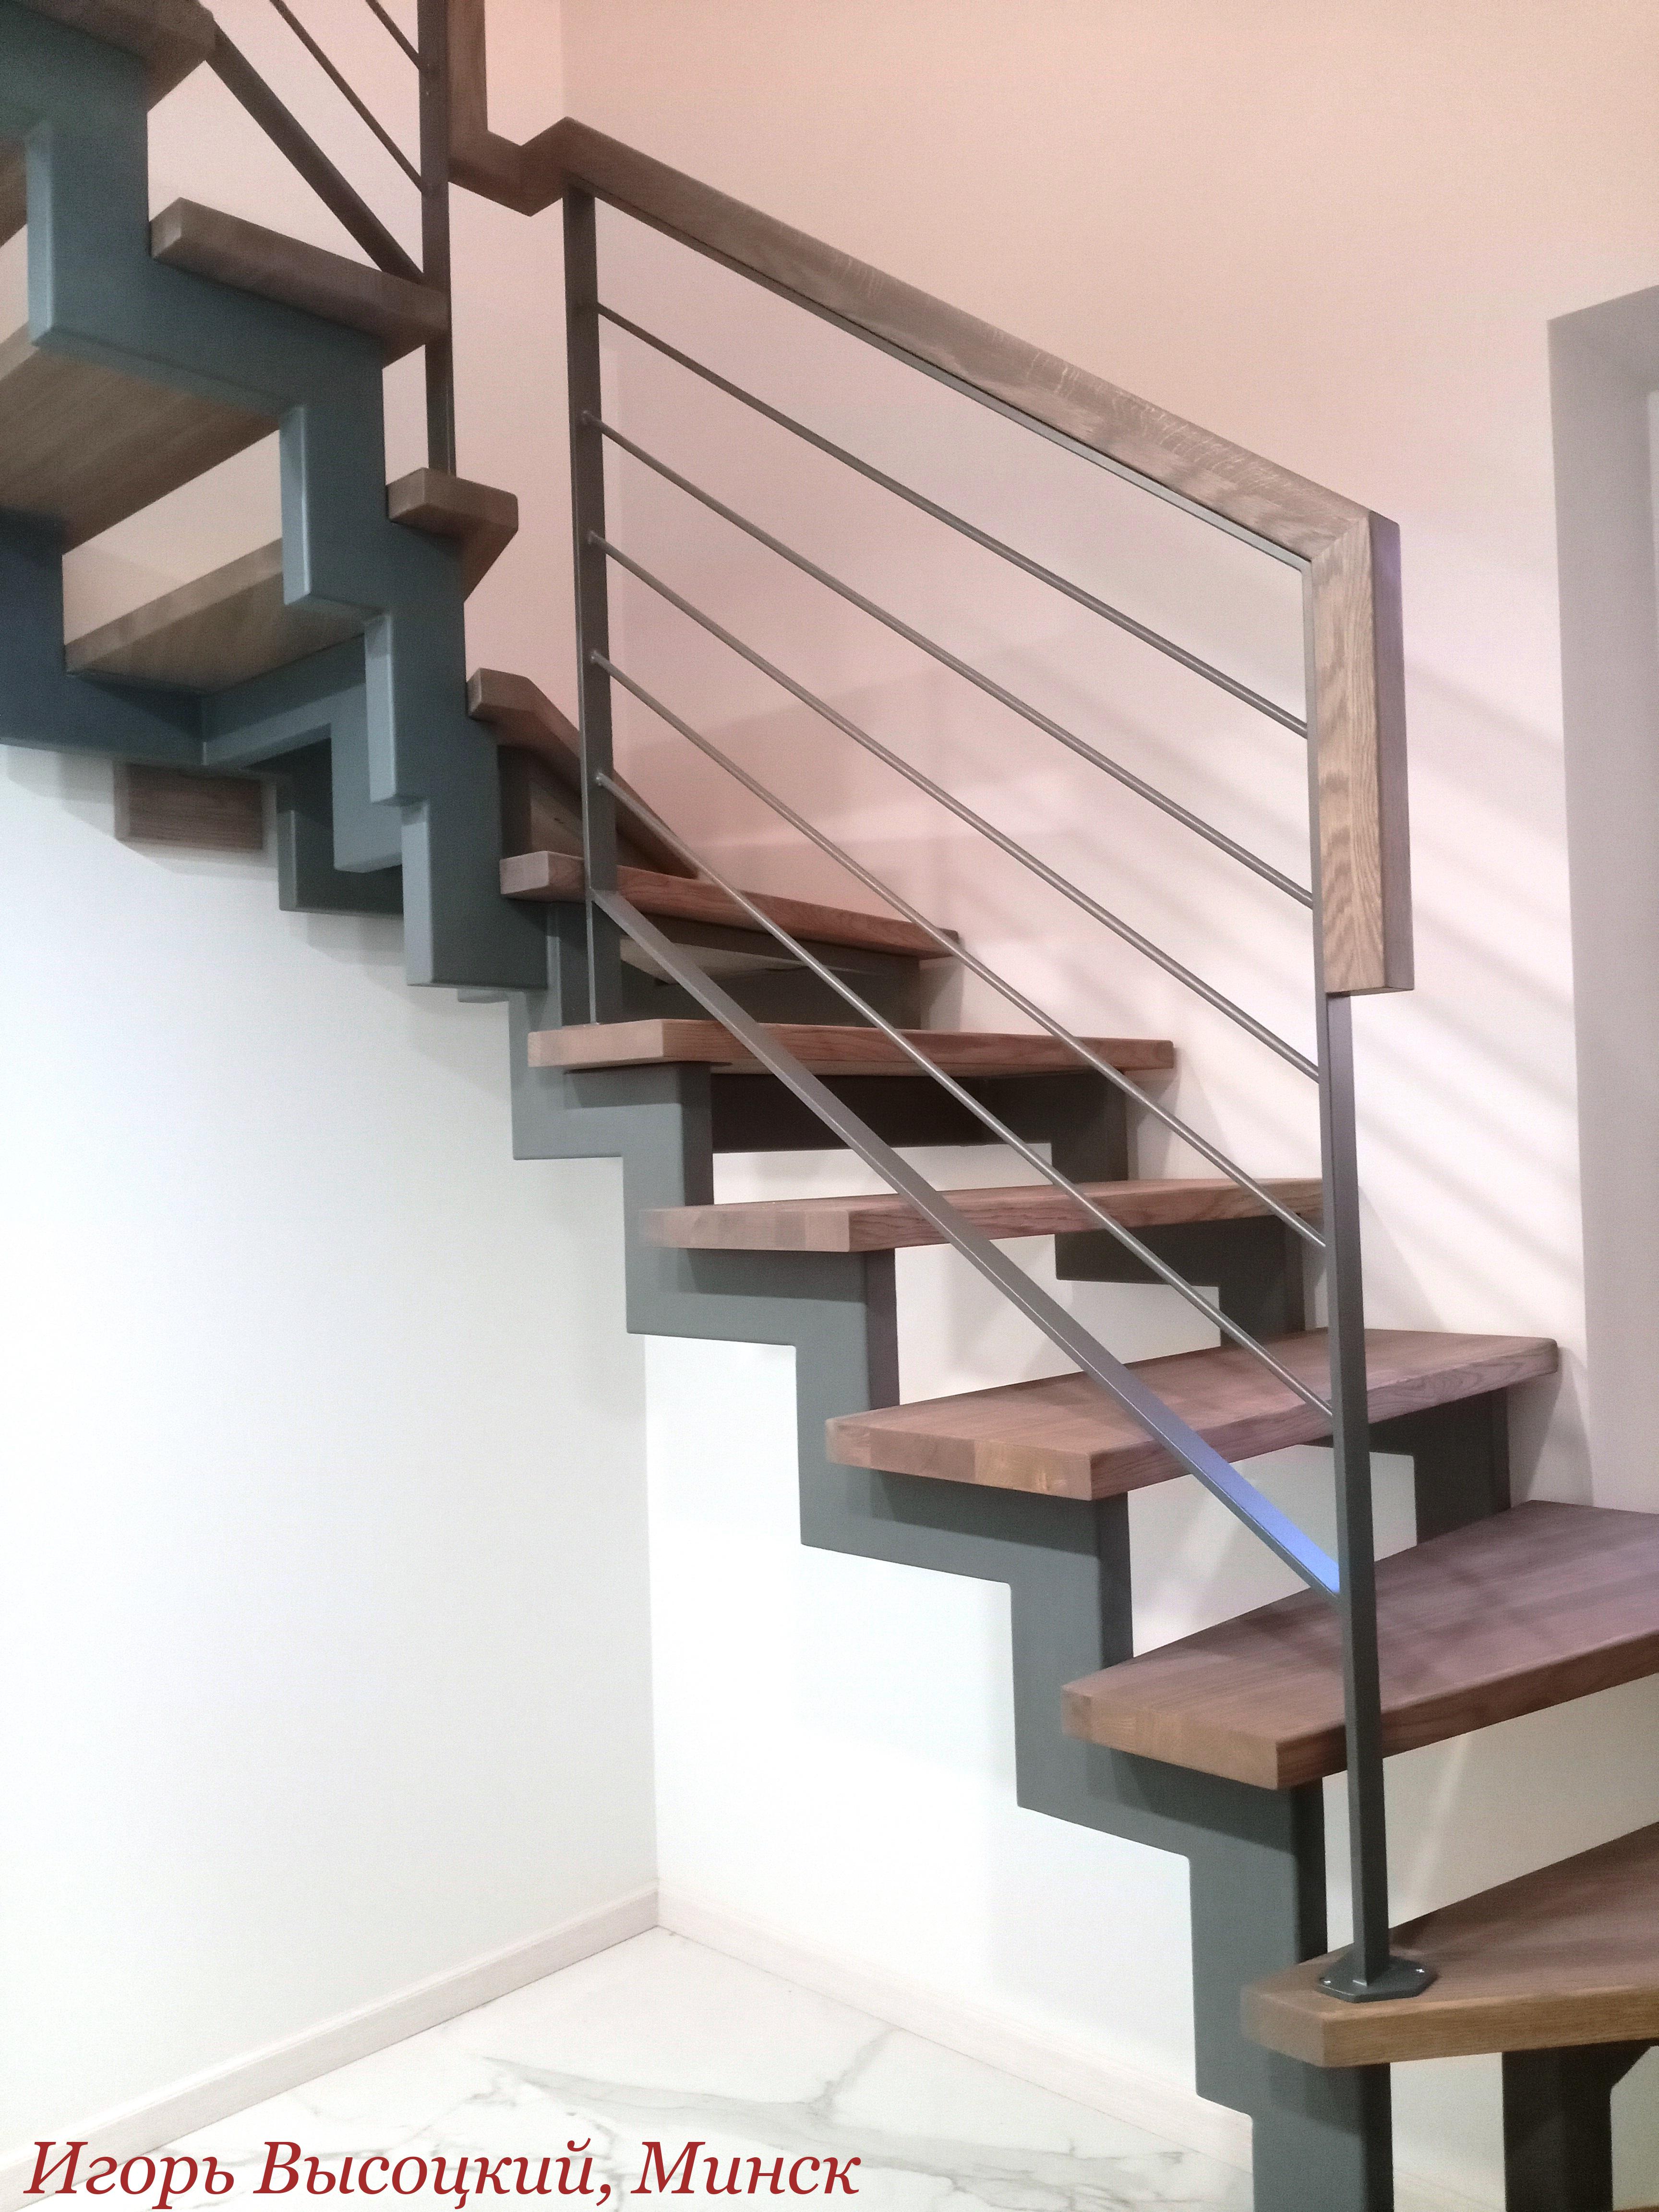 Межэтажные Лестницы Игоря Высоцкого, Минск - Классное решение по лестнице для современного дома